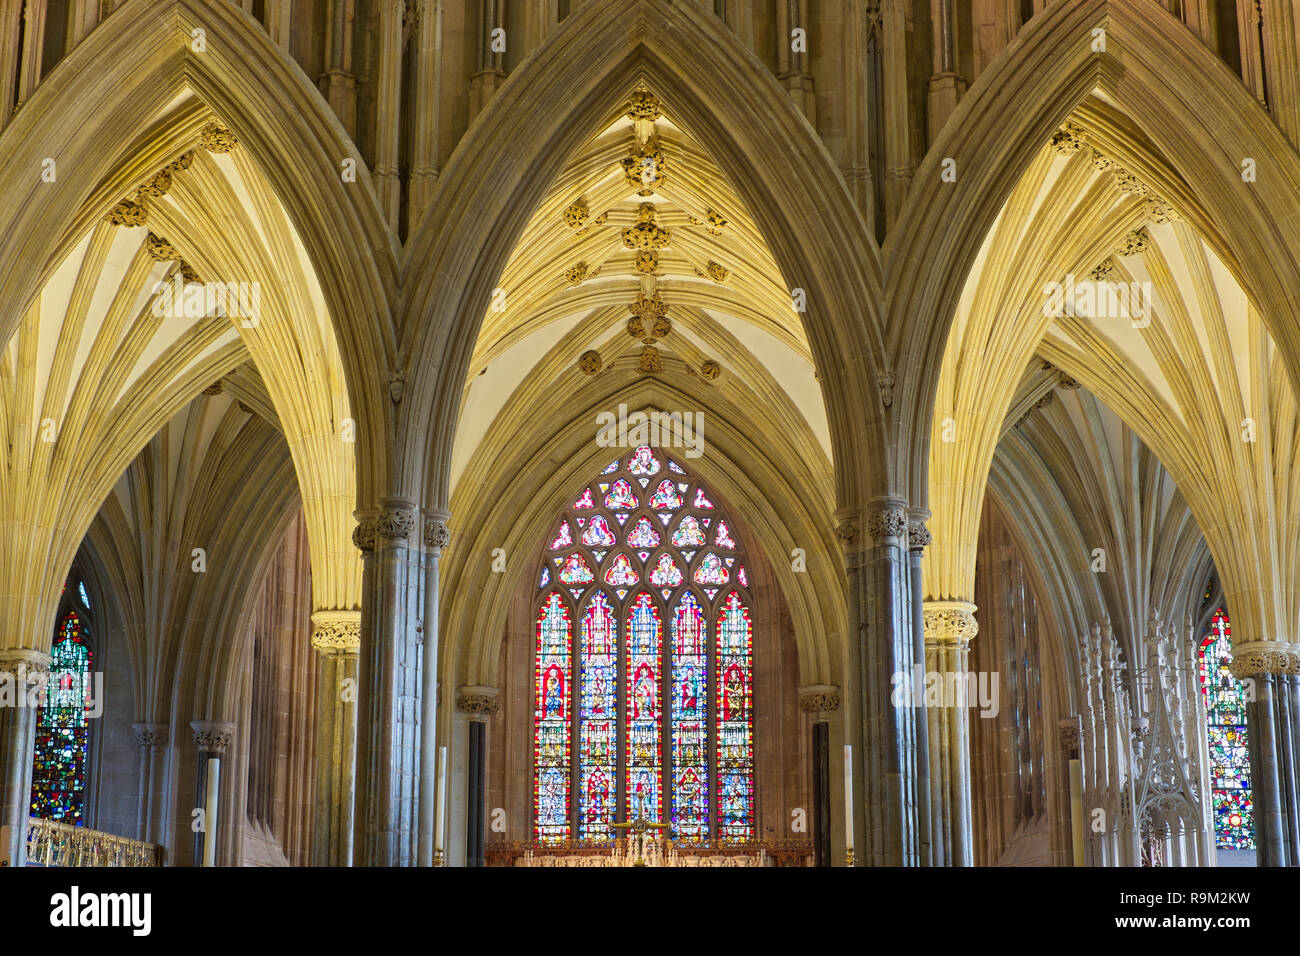 Dettaglio di archi, soffitti a volta e macchiare il vetro nella Cattedrale di Wells. Pozzetti, Somerset, Regno Unito Foto Stock